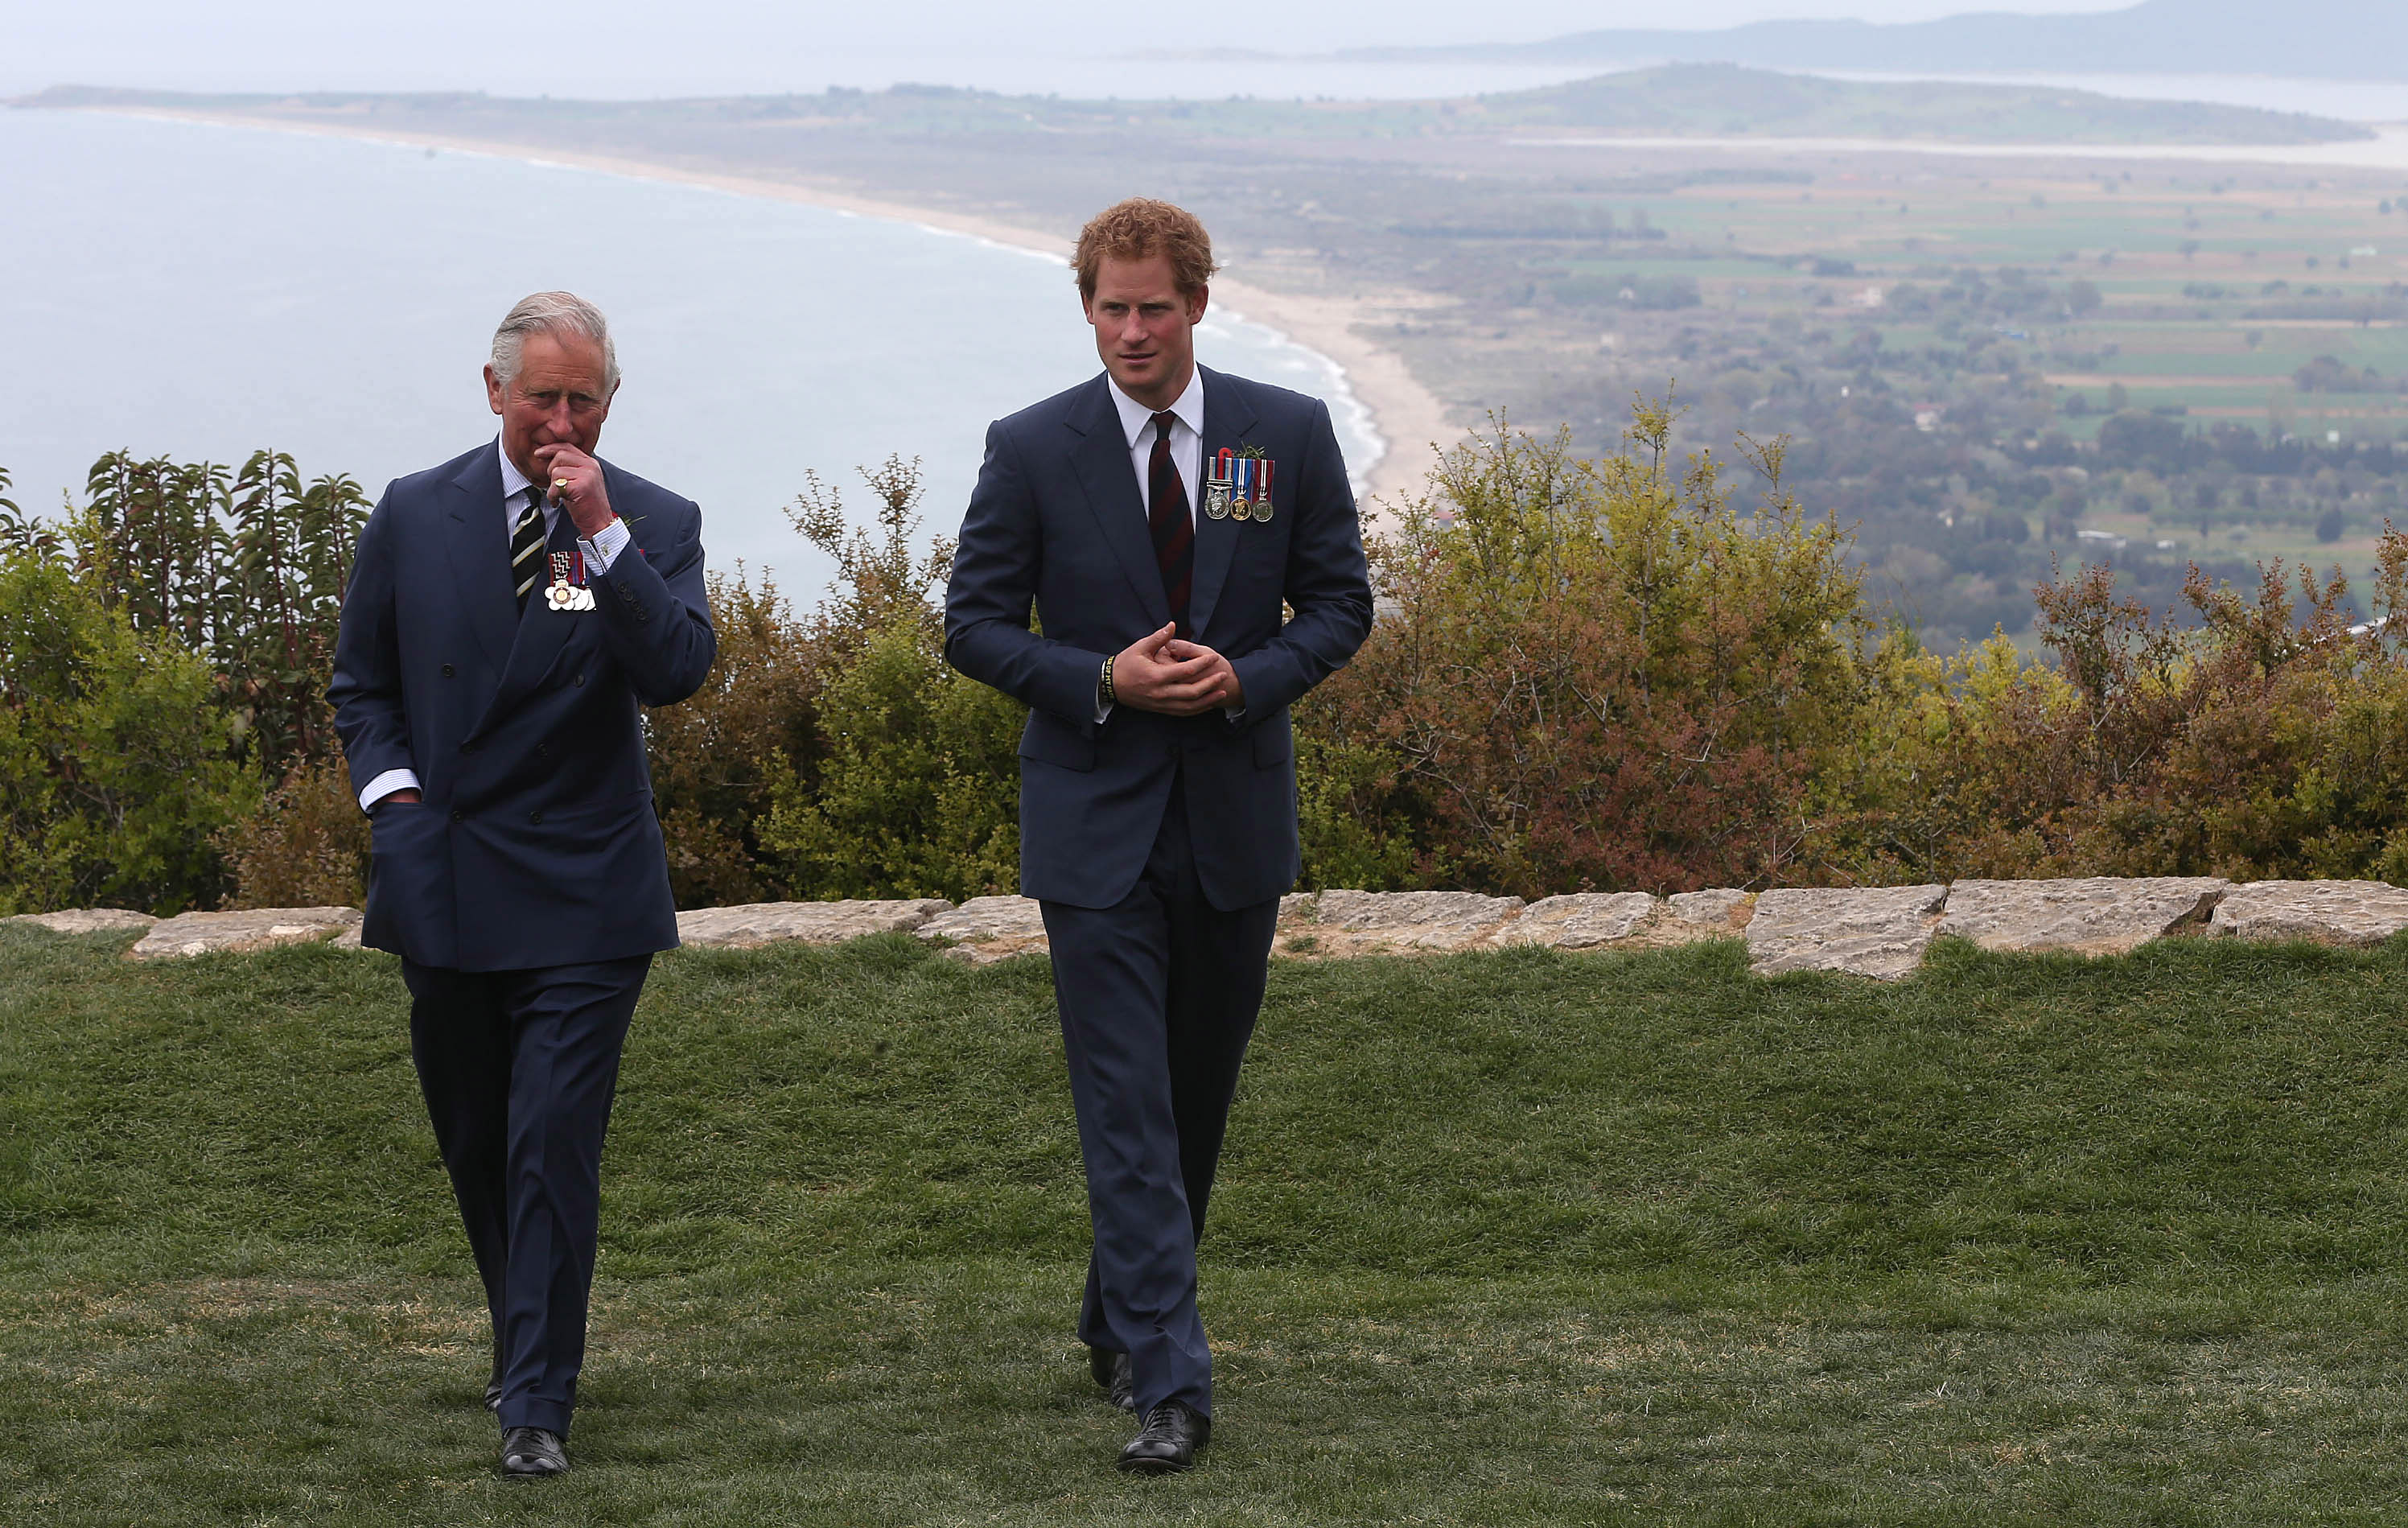 König Charles III. und Prinz Harry unterhalten sich während der Veranstaltung zum 100. Jahrestag der Schlacht von Gallipoli in Gallipoli, Türkei am 25. April 2015 | Quelle: Getty Images